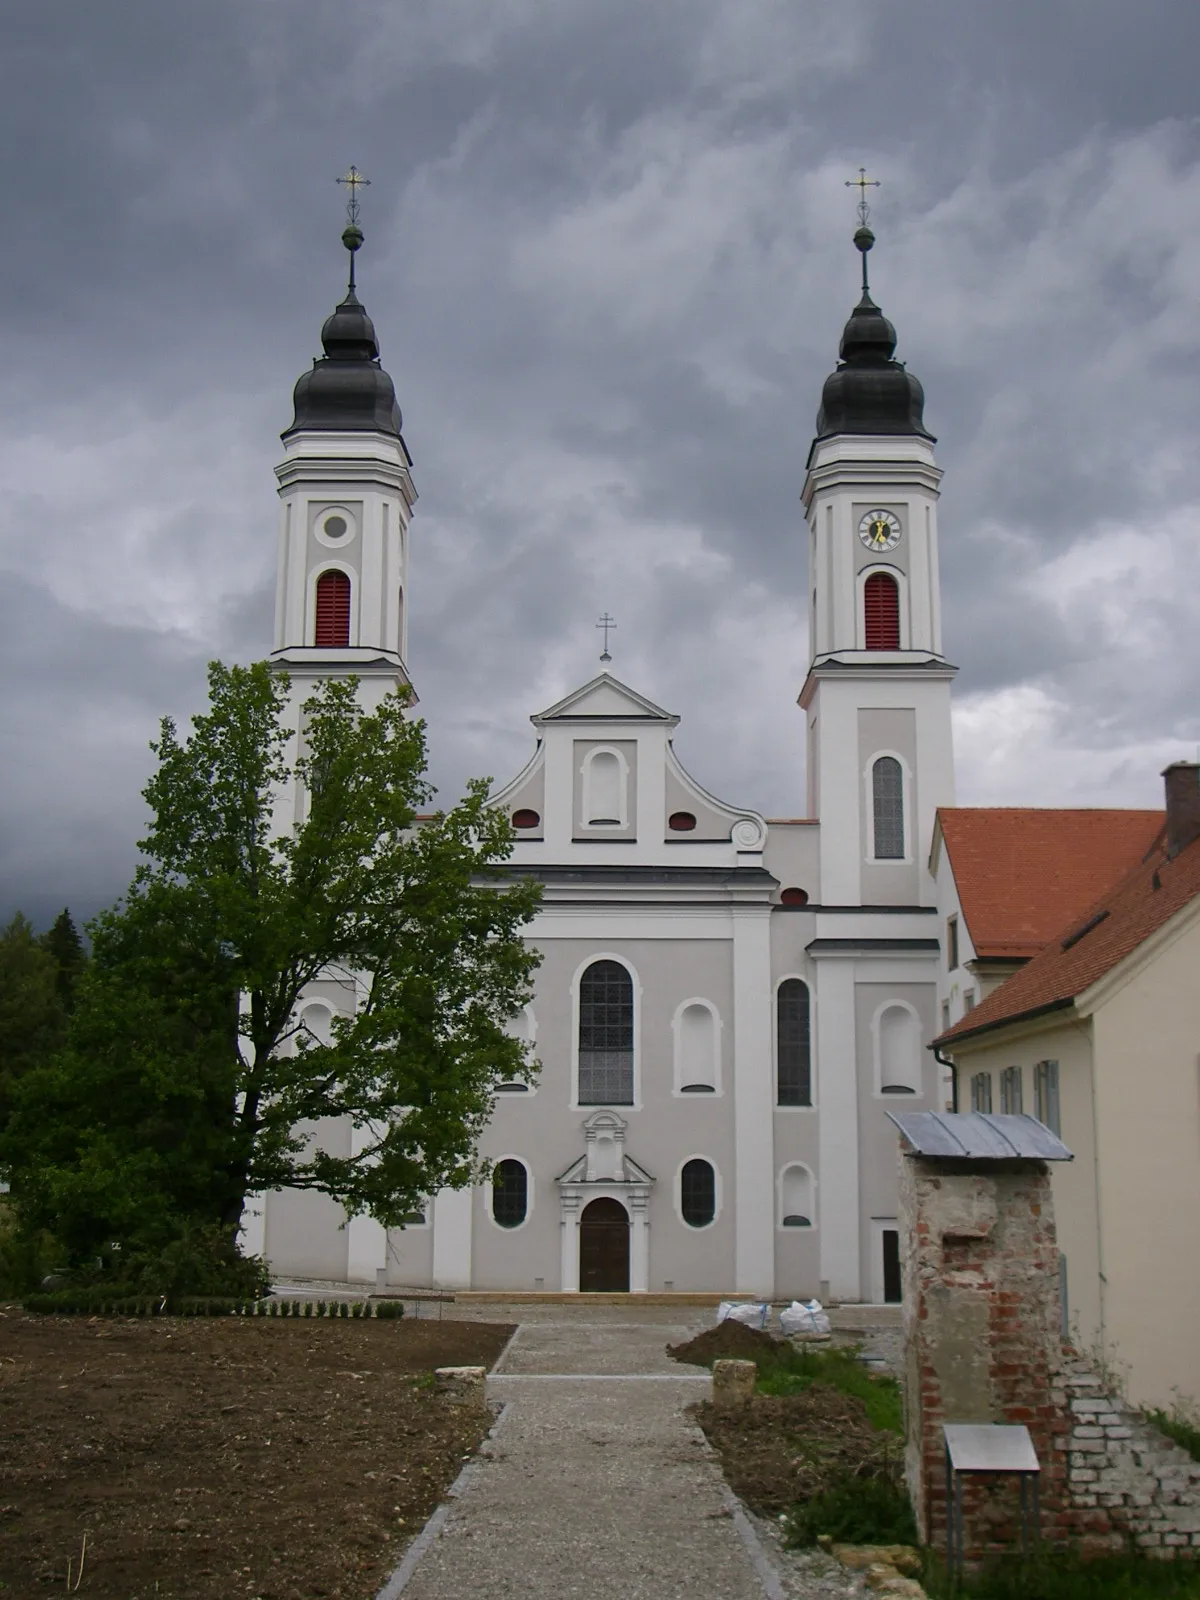 Photo showing: Kirche des ehemaligen Klosters Irsee, Allgäu, Deutschland

picture taken by user Alraune on 27.8.2006